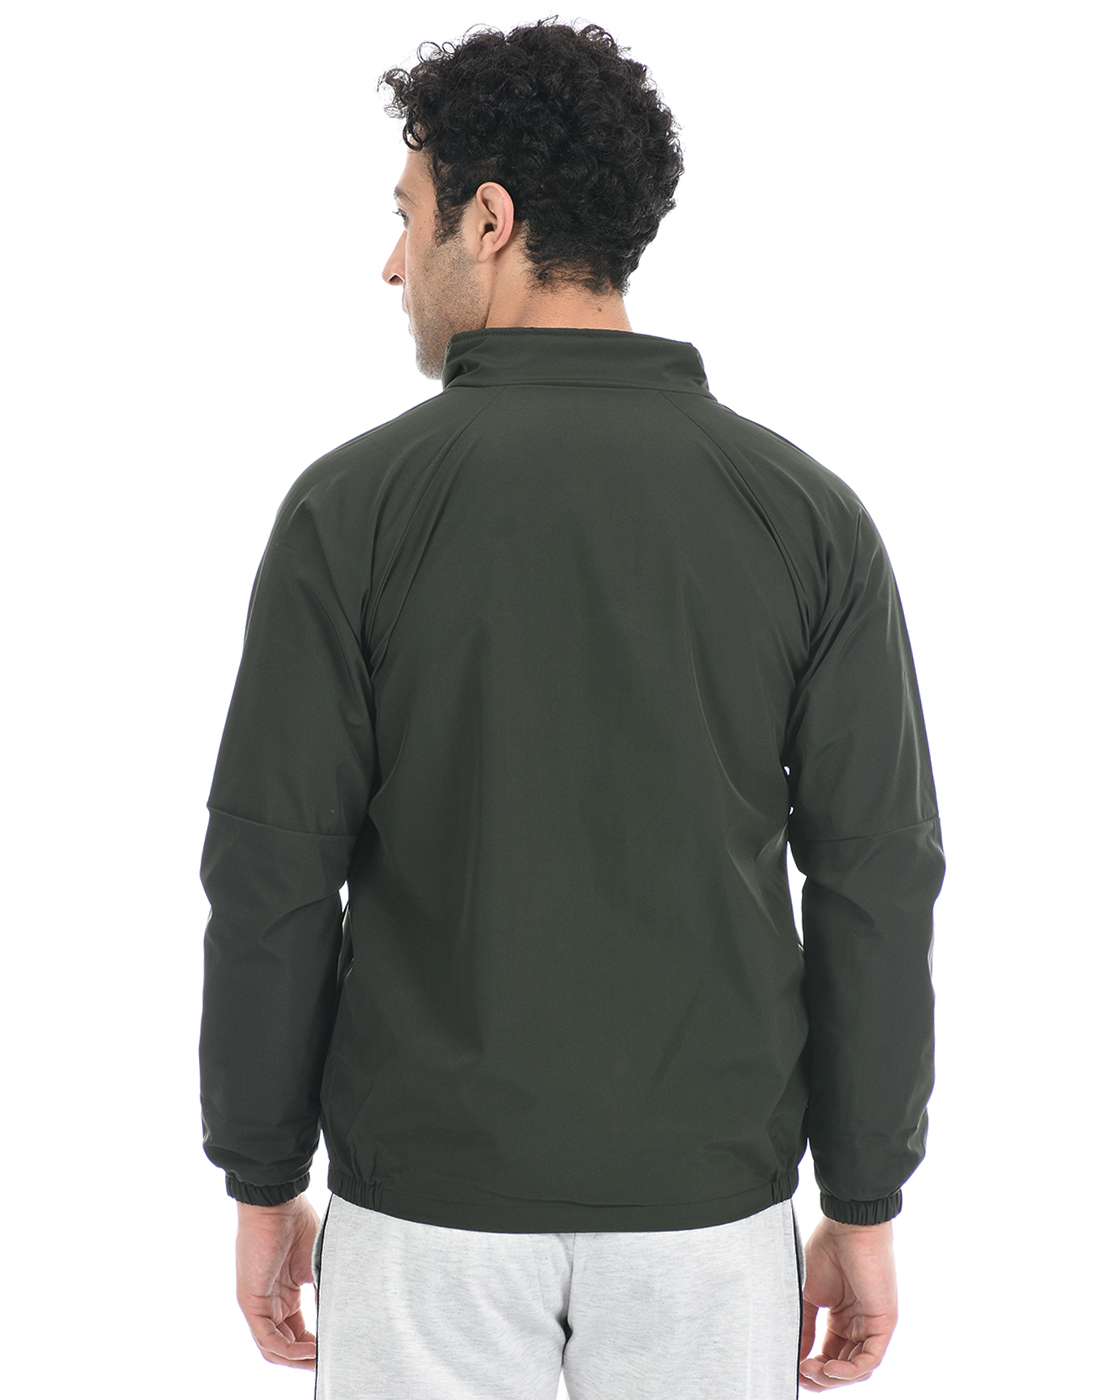 Cloak & Decker by Monte Carlo Men Solid Green Sweatshirt